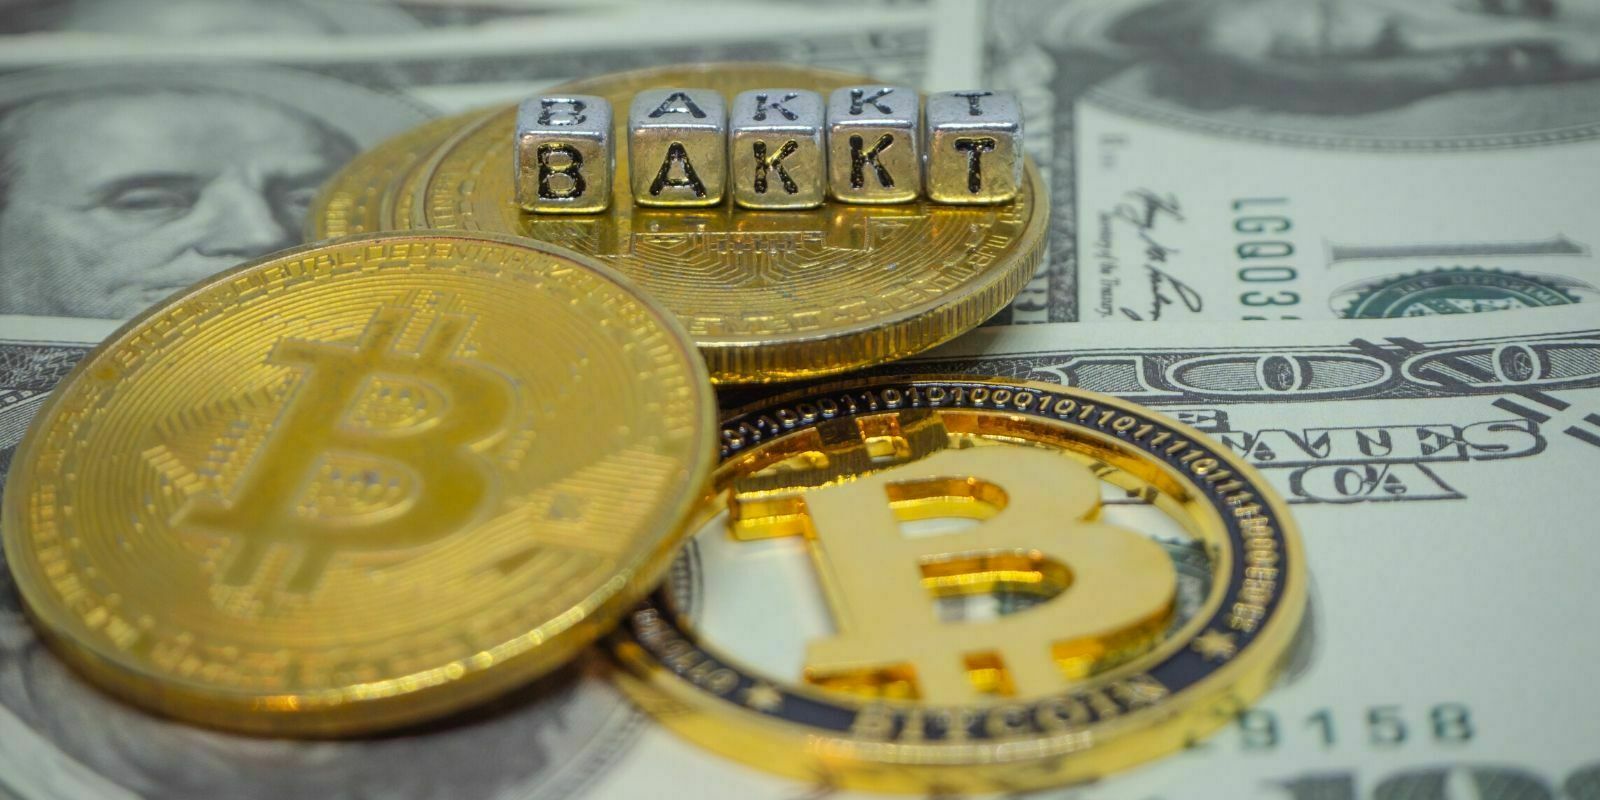 Le volume de Bakkt atteint des sommets après le flash crash du Bitcoin